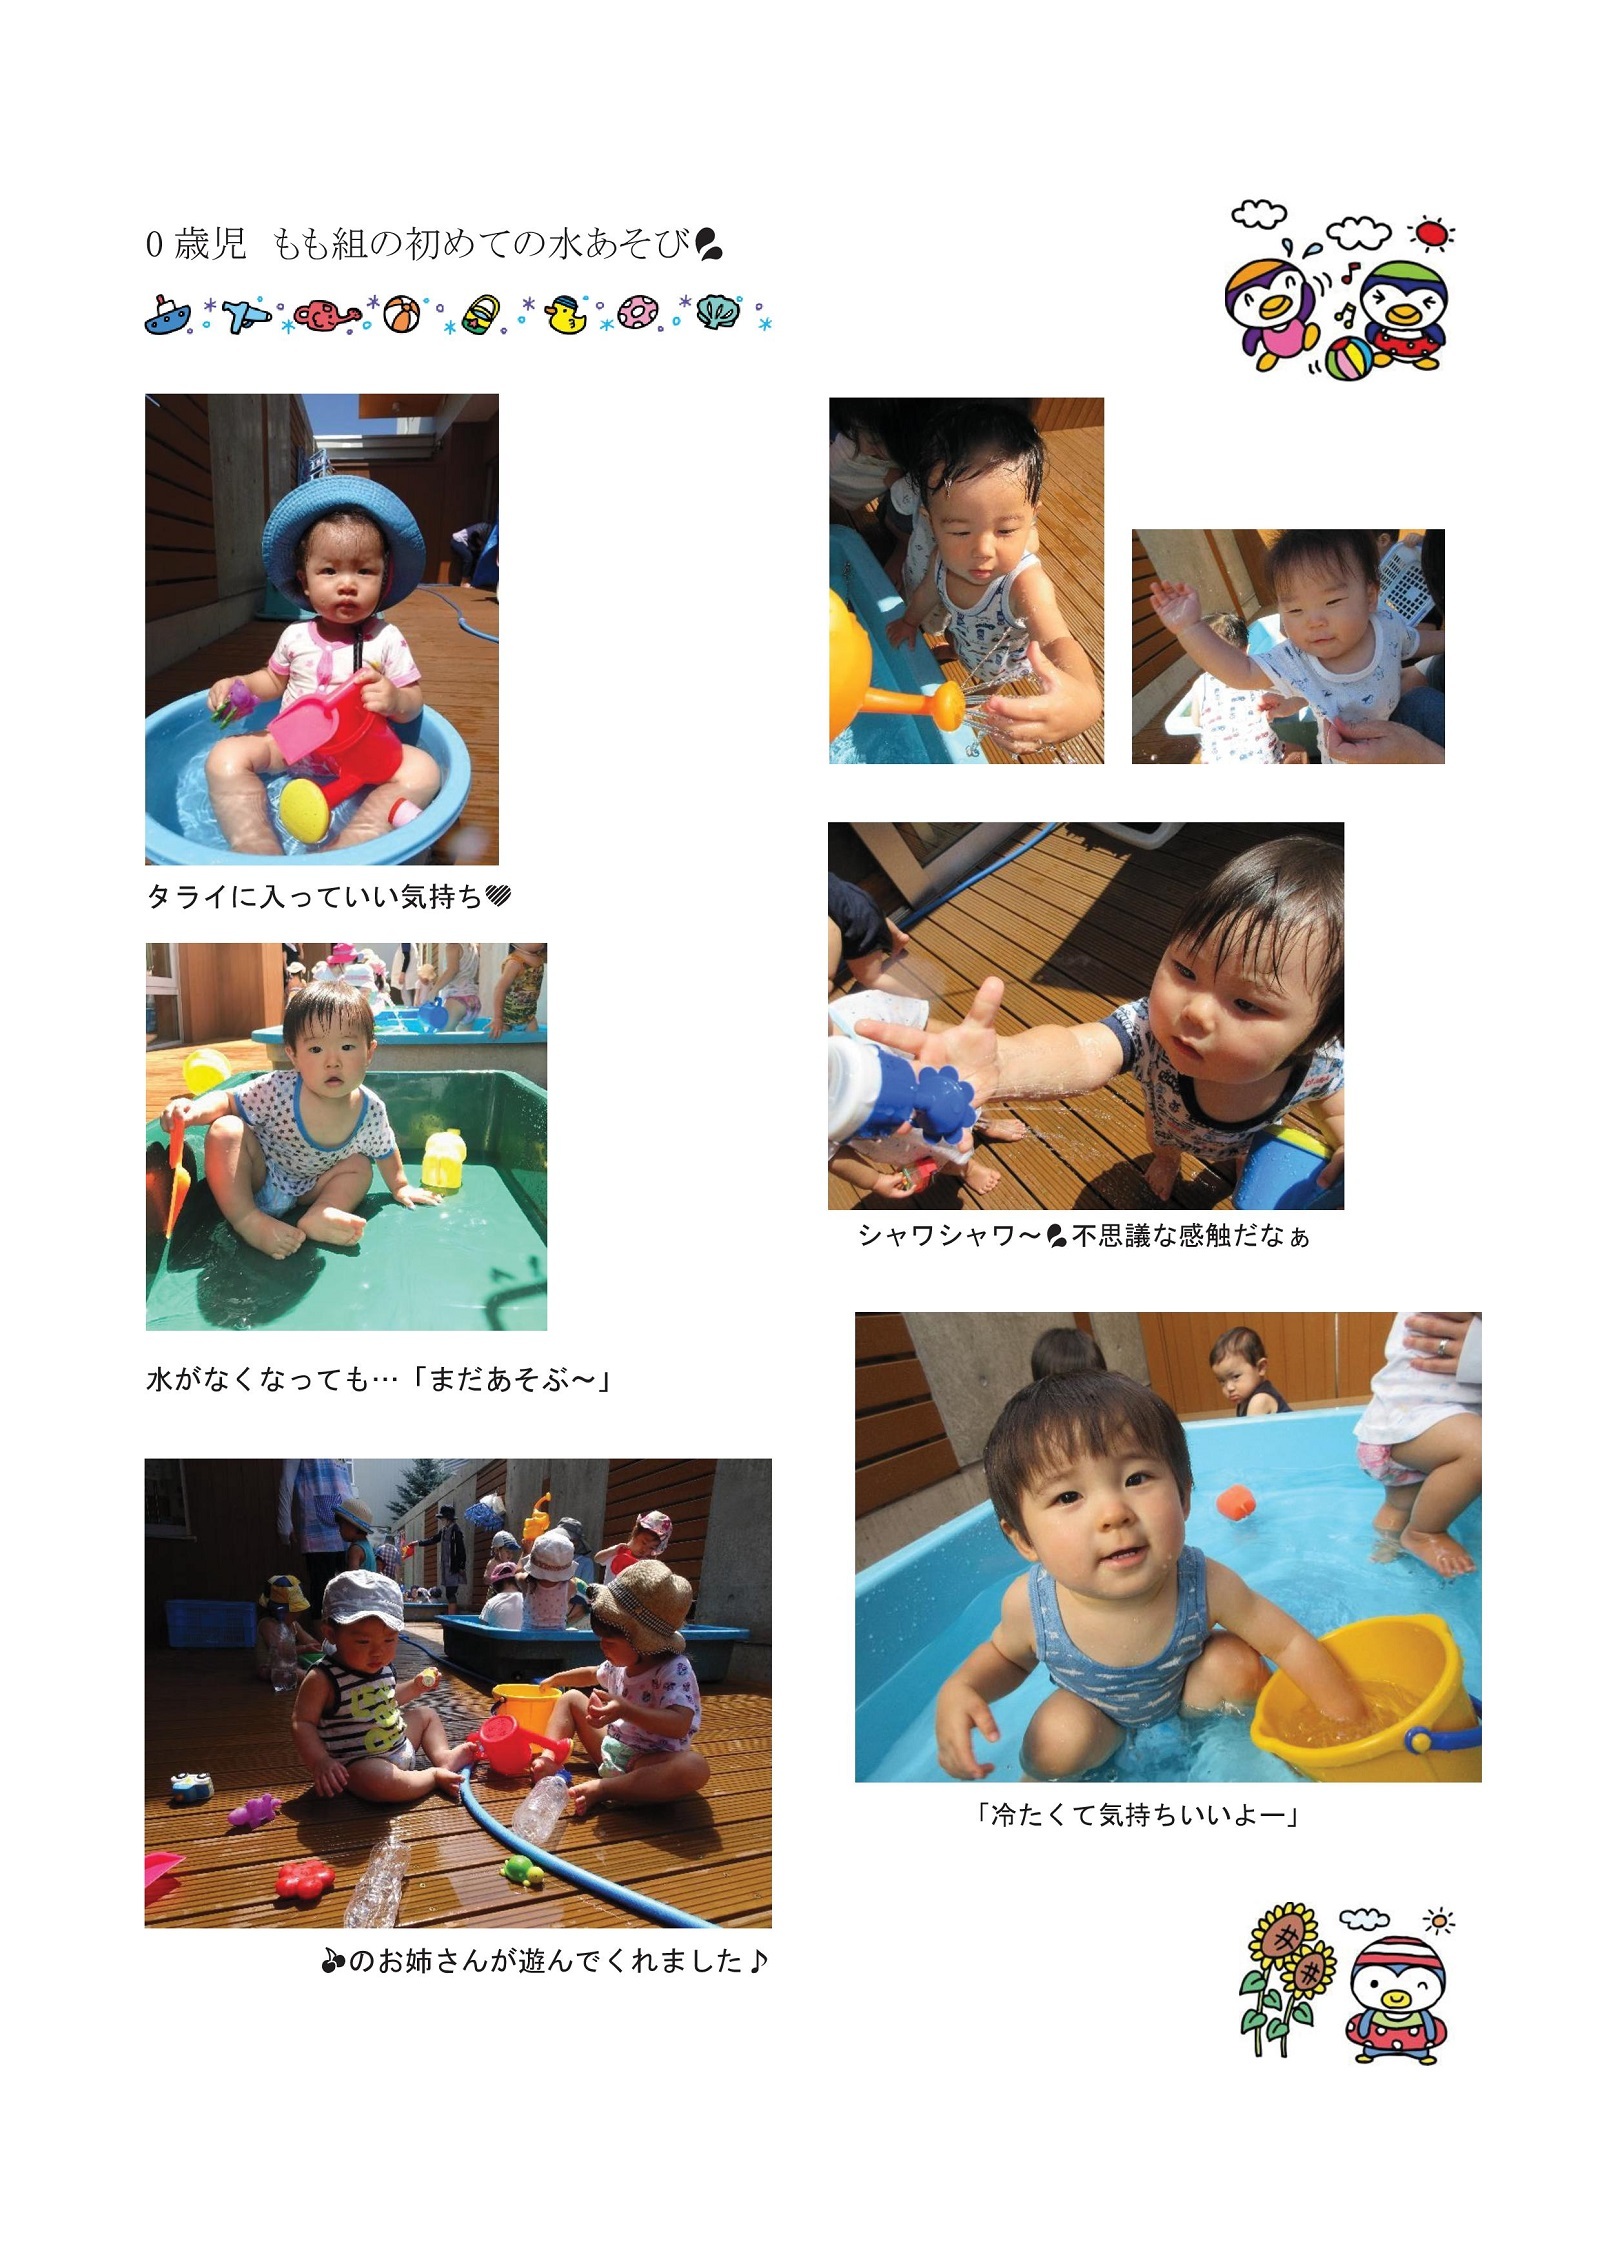 虹いろ保育所通信(0歳児もも組の様子・令和2年夏)の画像